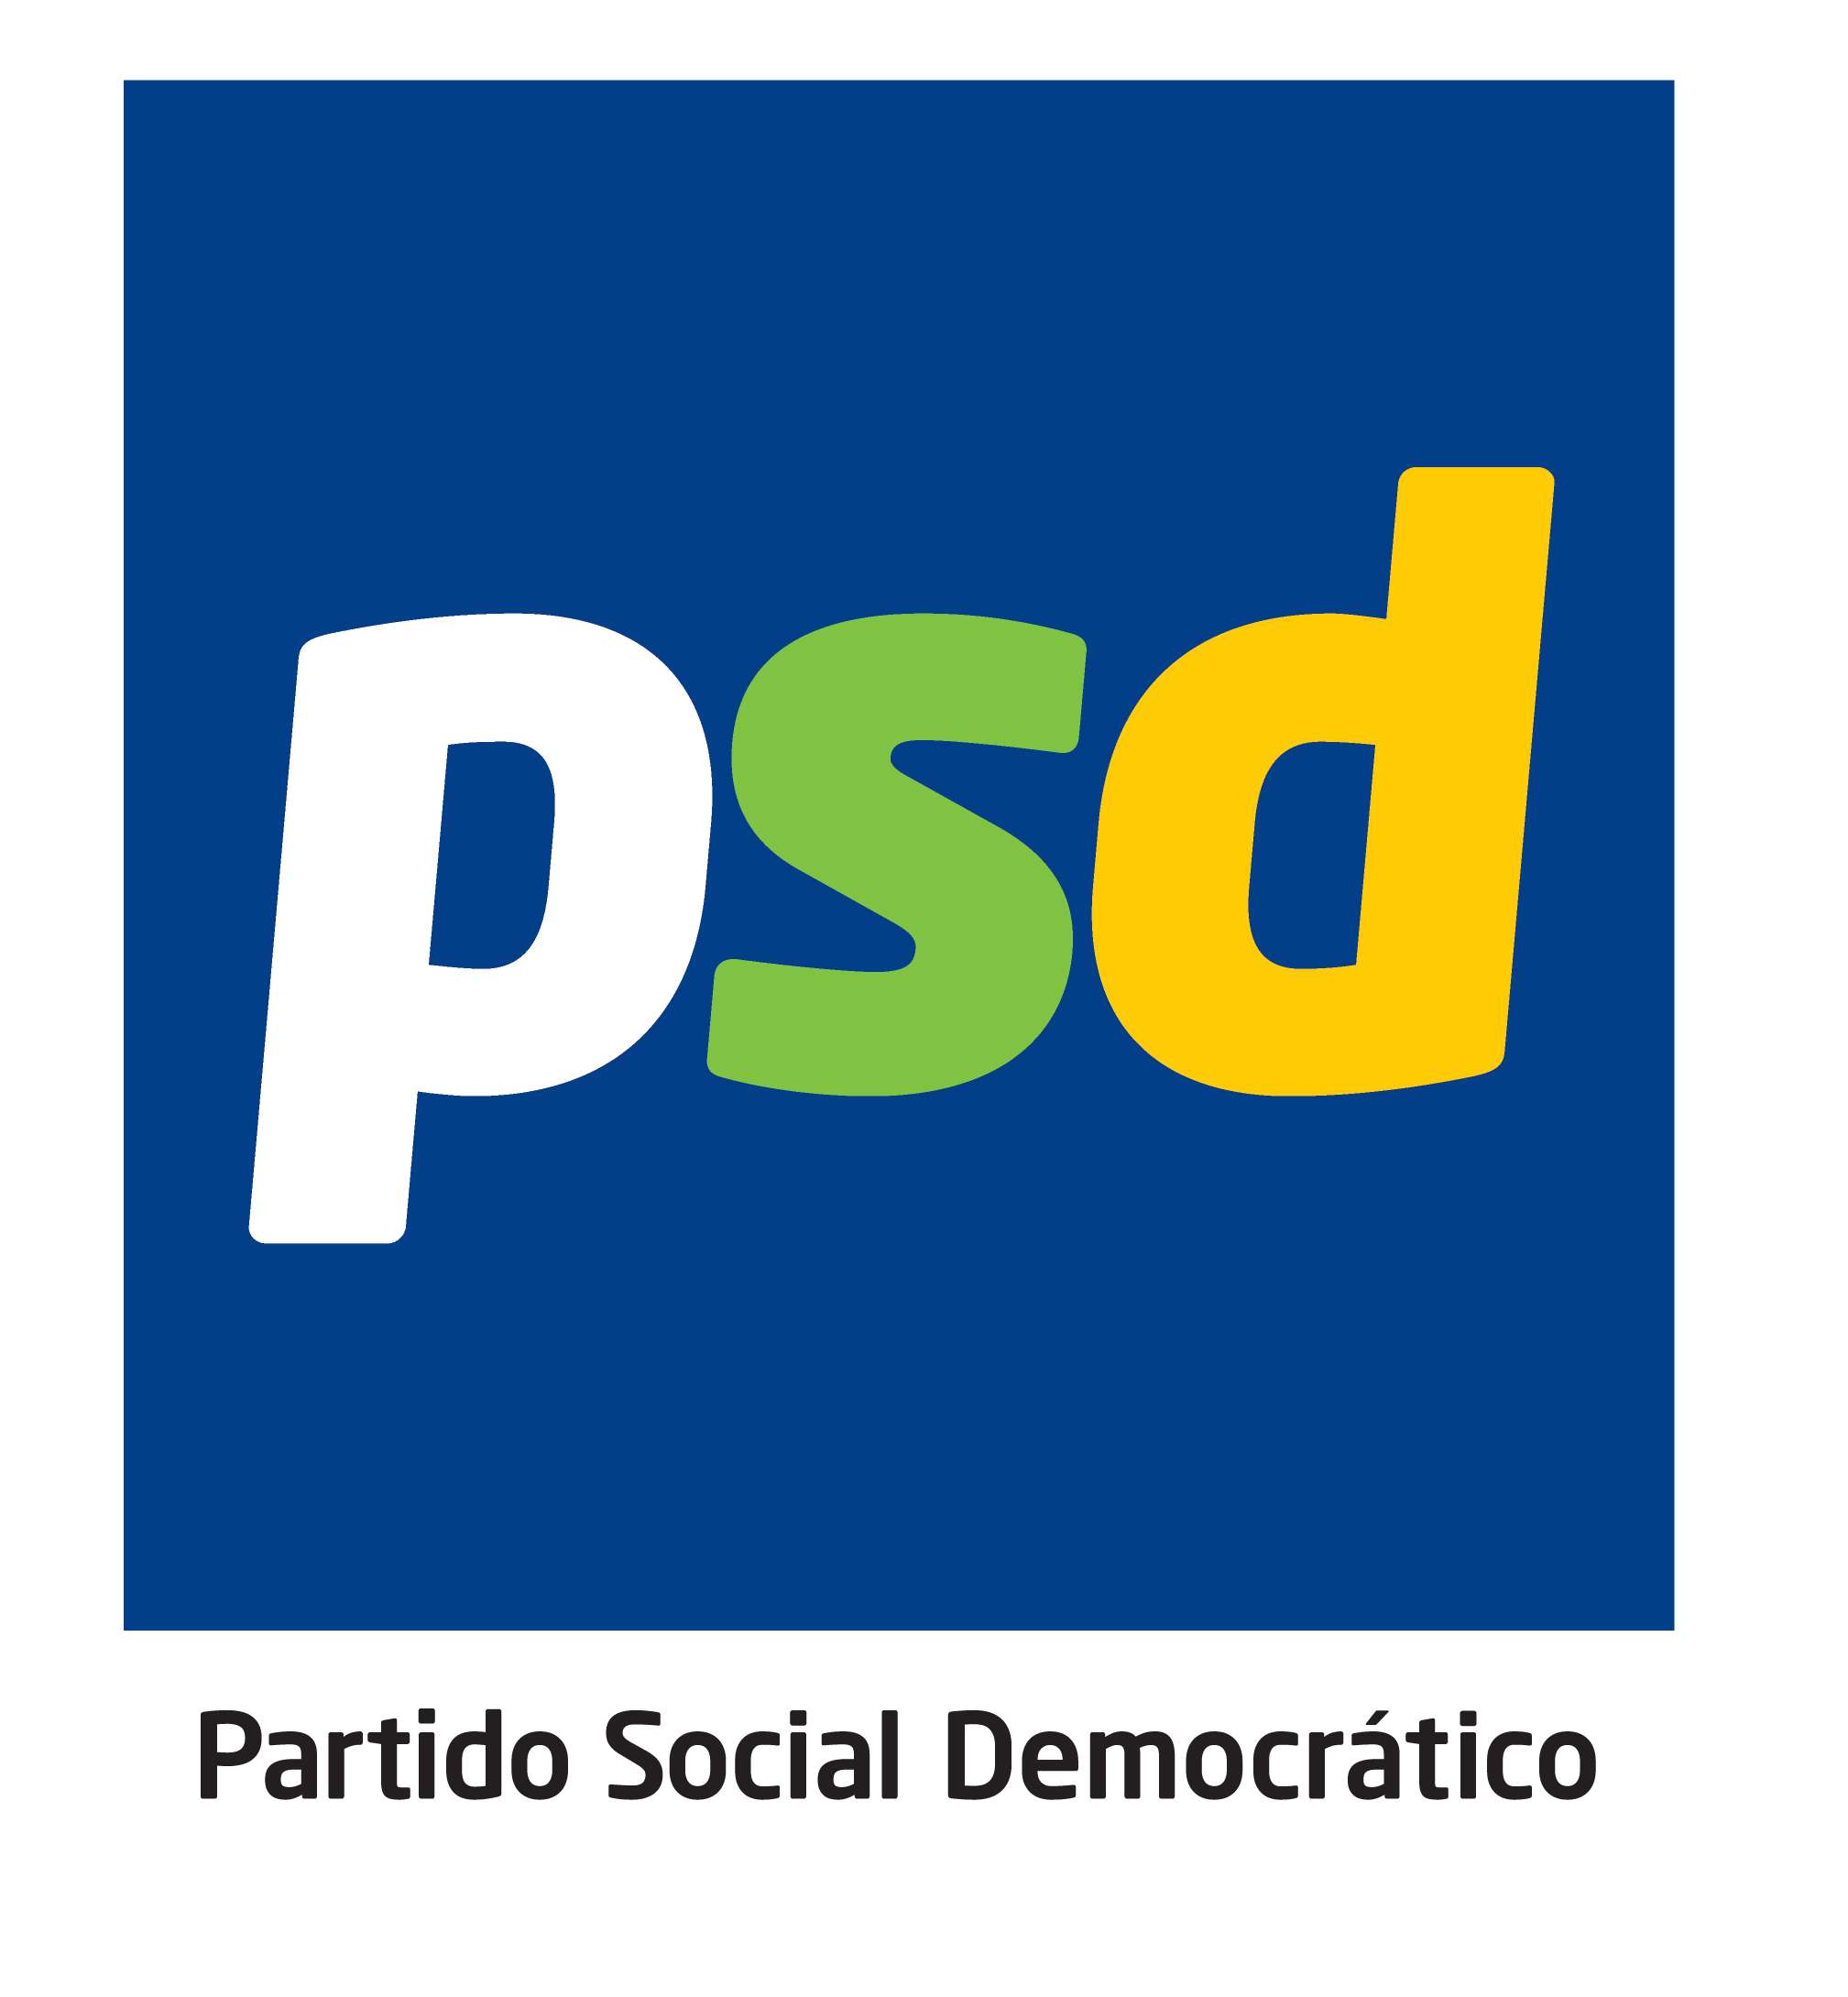 PSD_Logo_Oficial_fundoAzul-2